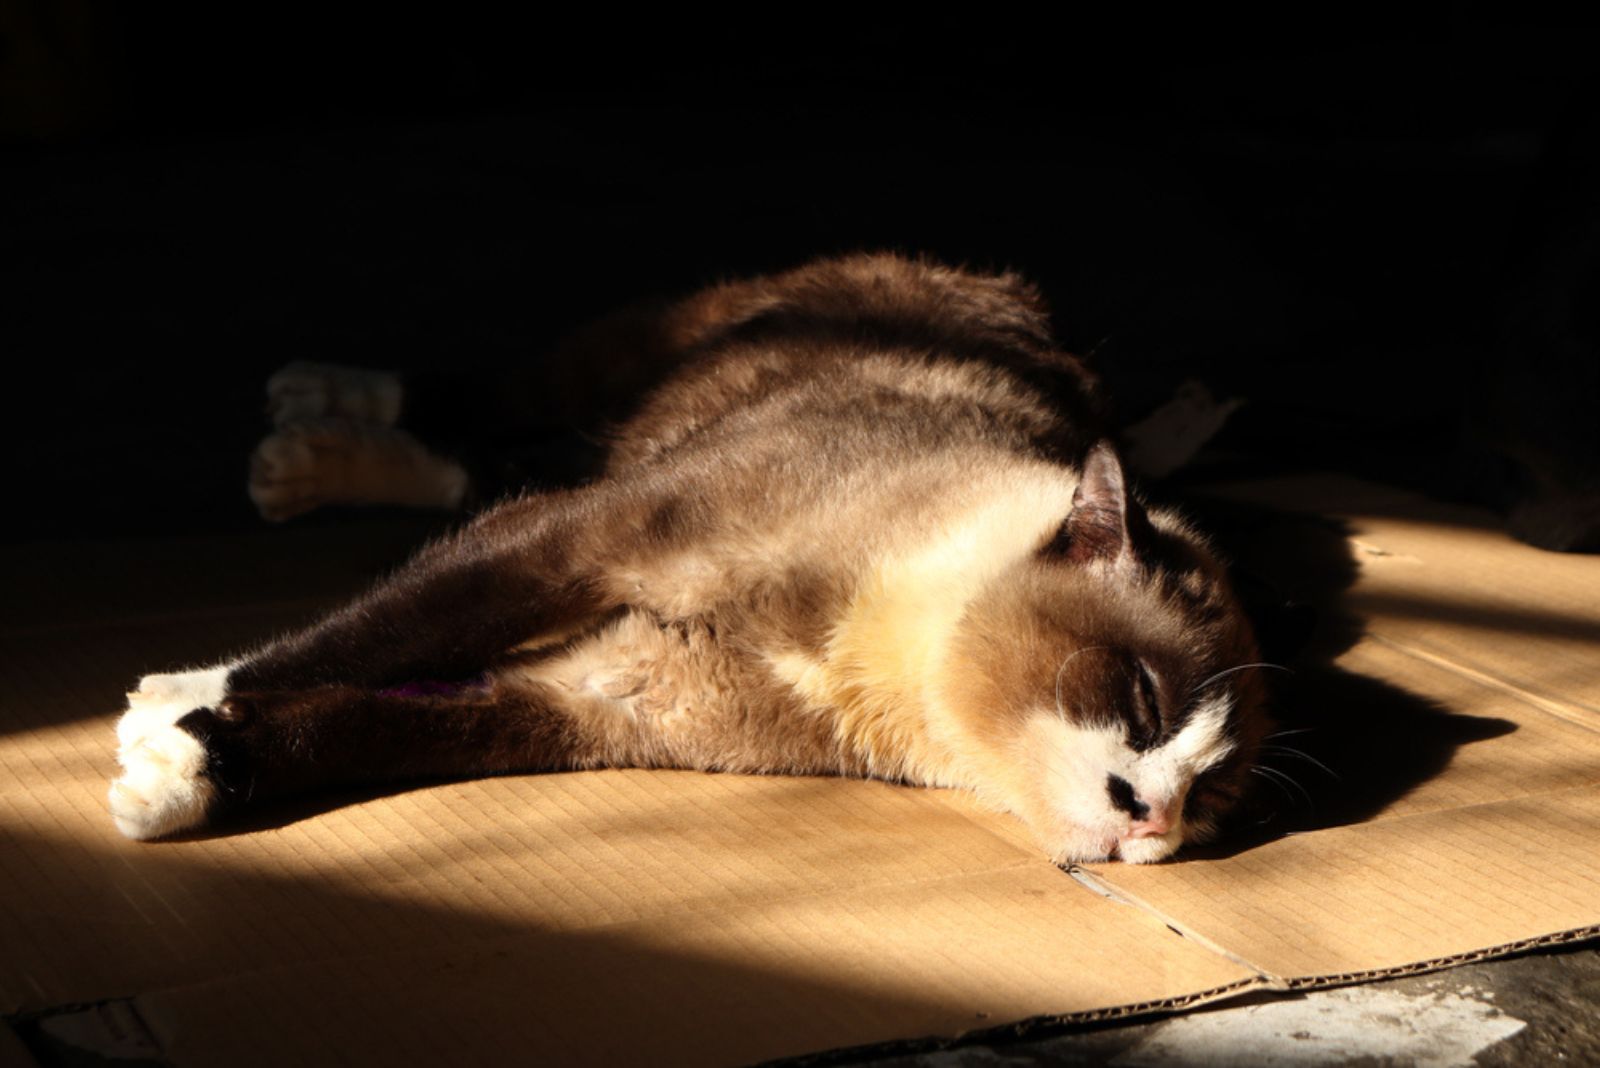 De kat ligt op het karton